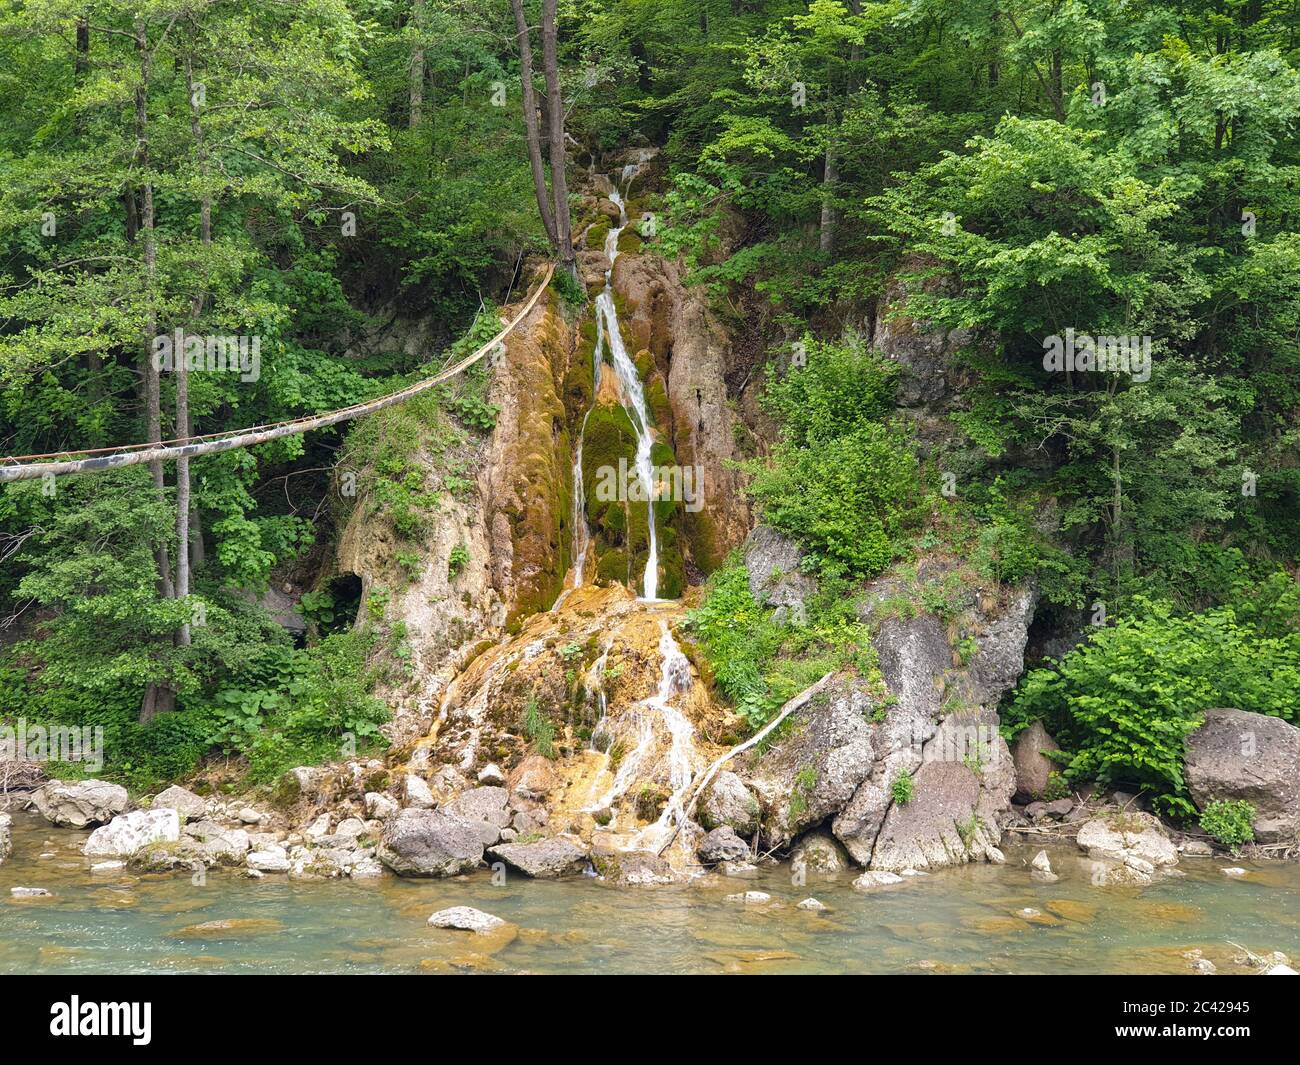 Schöner Sipote Wasserfall fließt in Aries Fluss in Trascau Berge, Apuseni, Siebenbürgen, Rumänien. Natürliches Wasser Fluss von Wasser in Travertin Wasser f Stockfoto